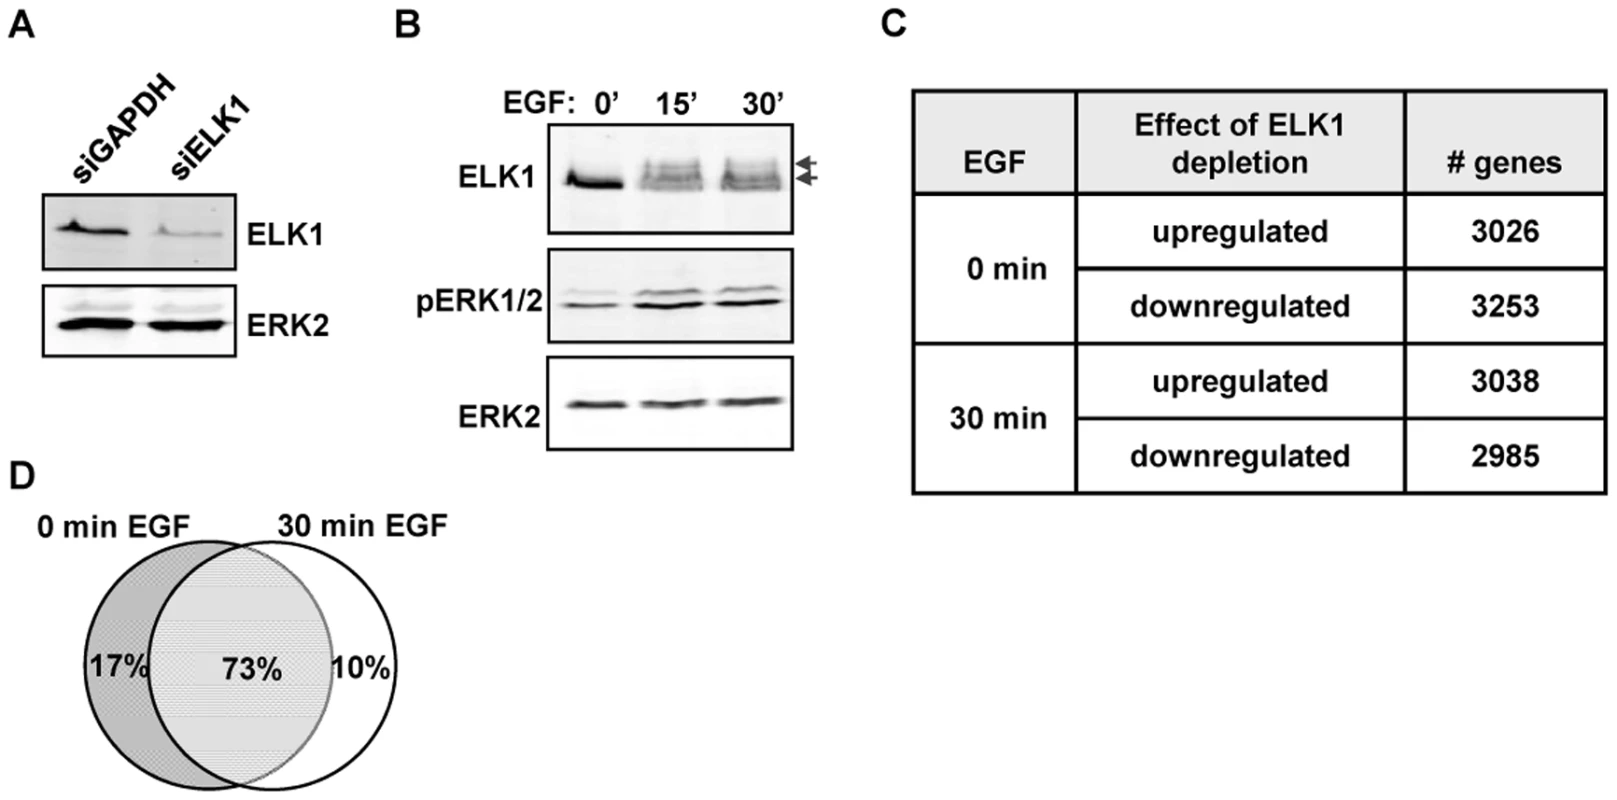 Depletion of ELK1 affects gene expression.